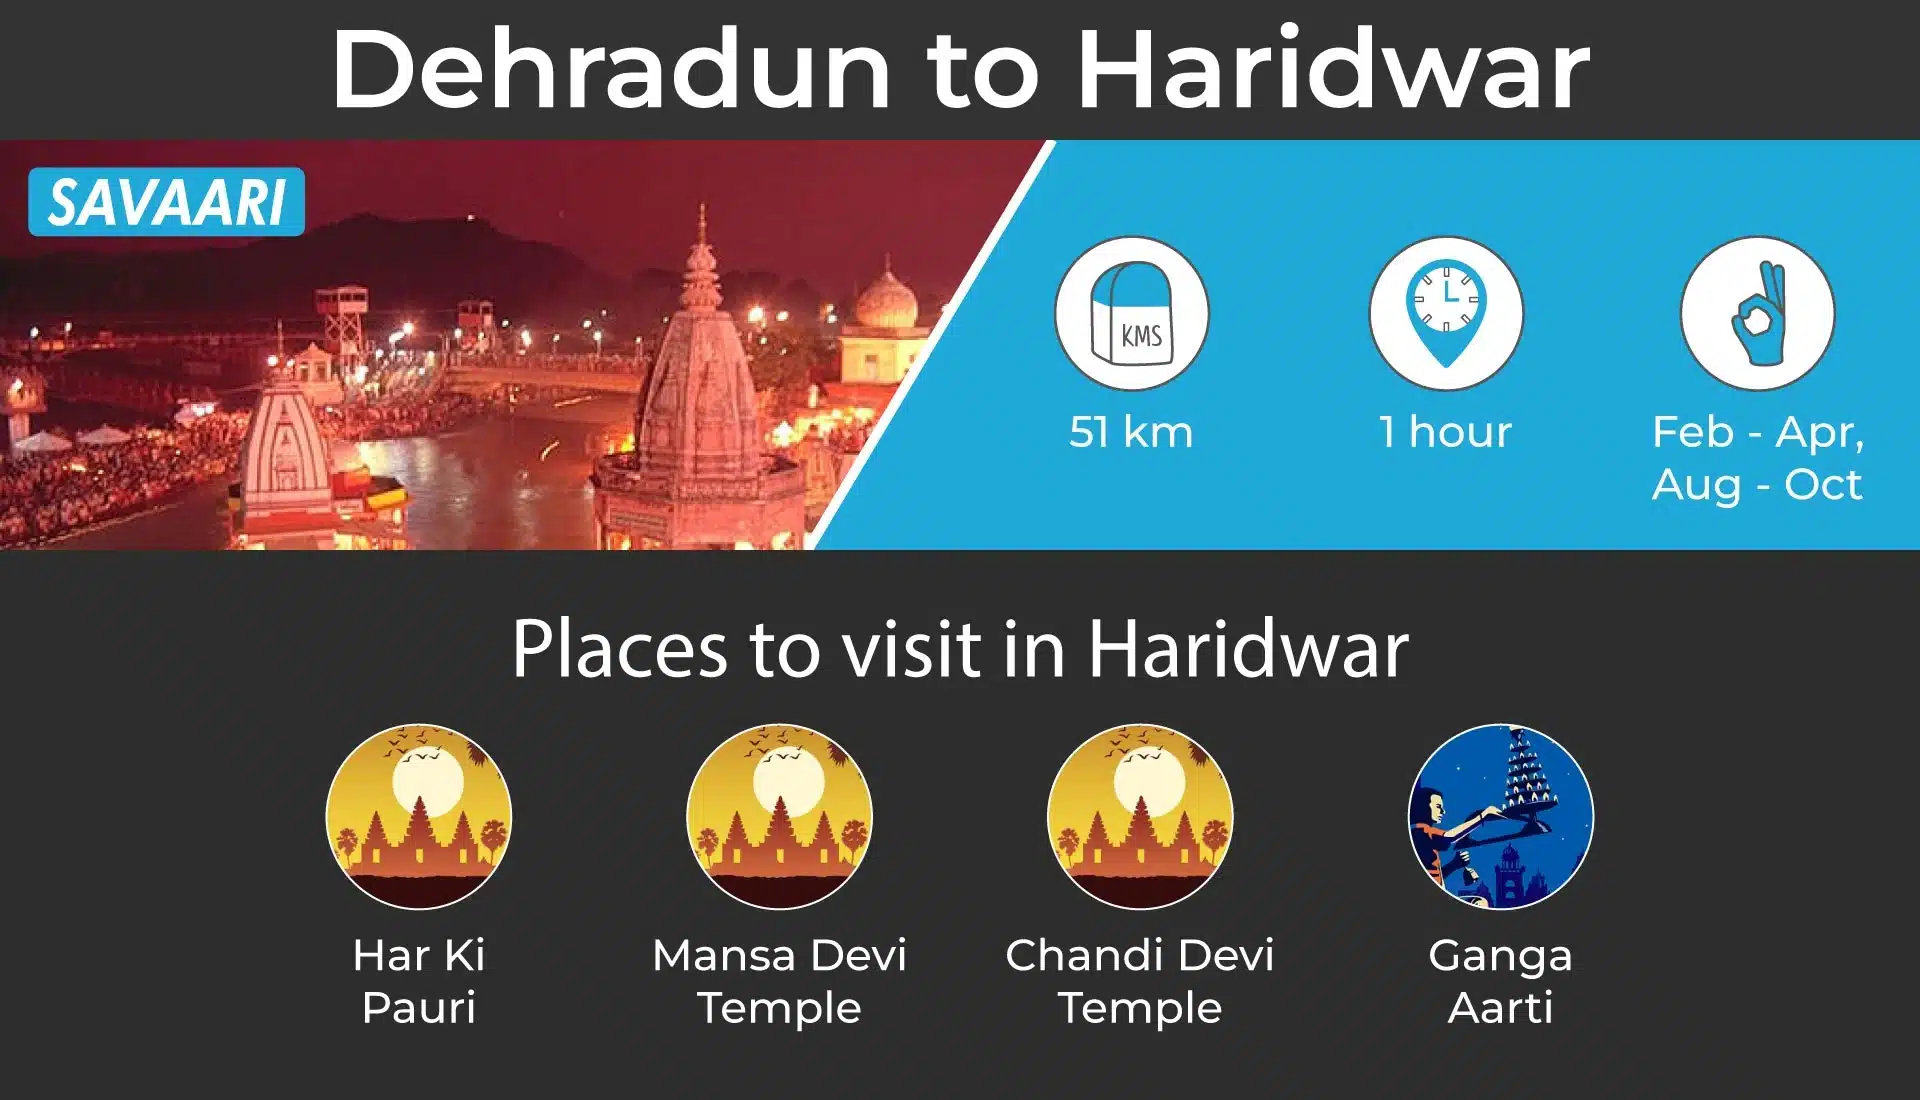 Dehradun to Haridwar